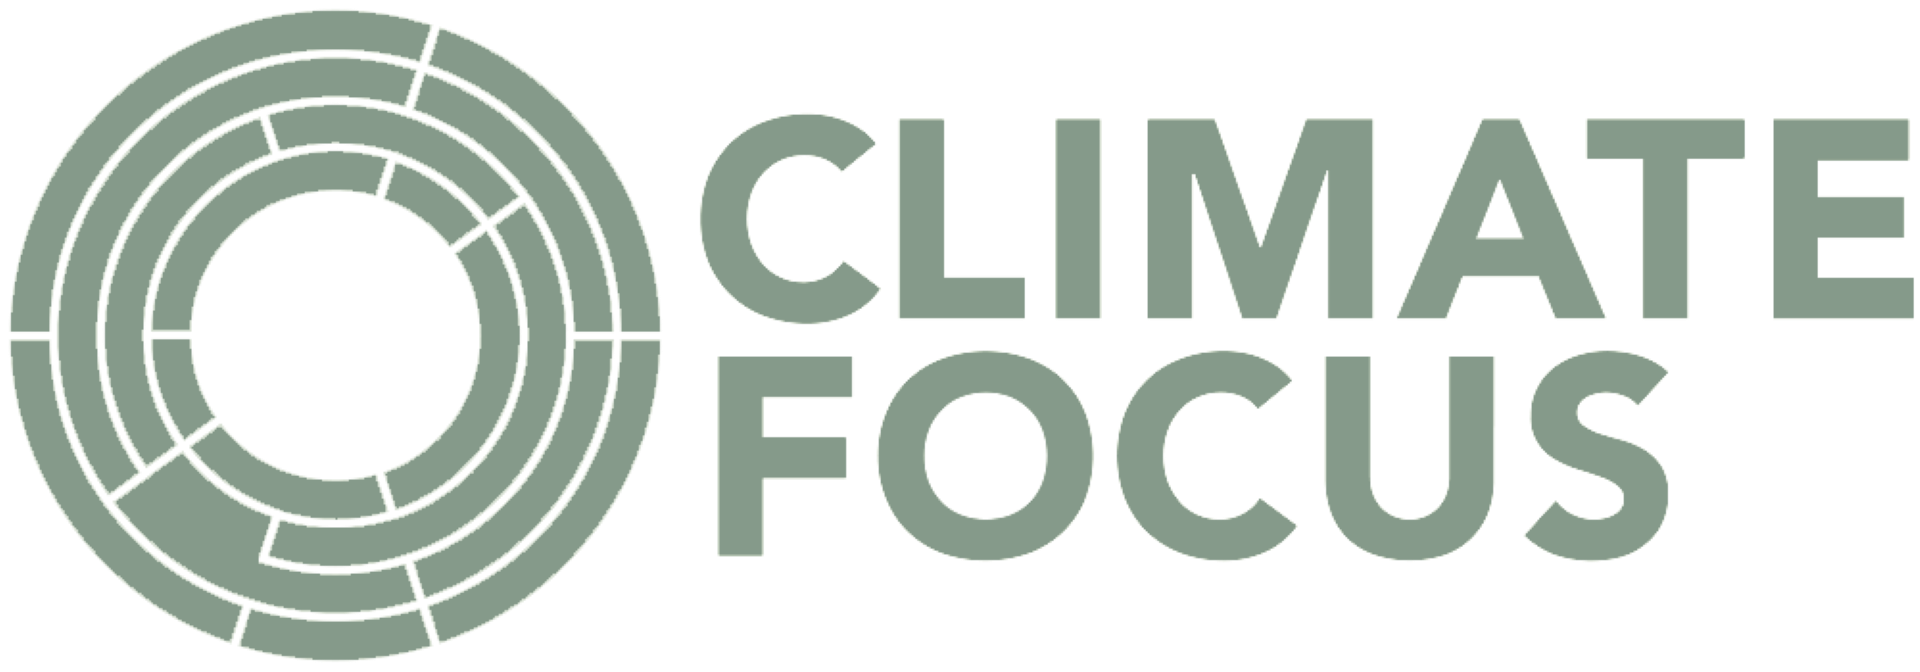 Climate focus